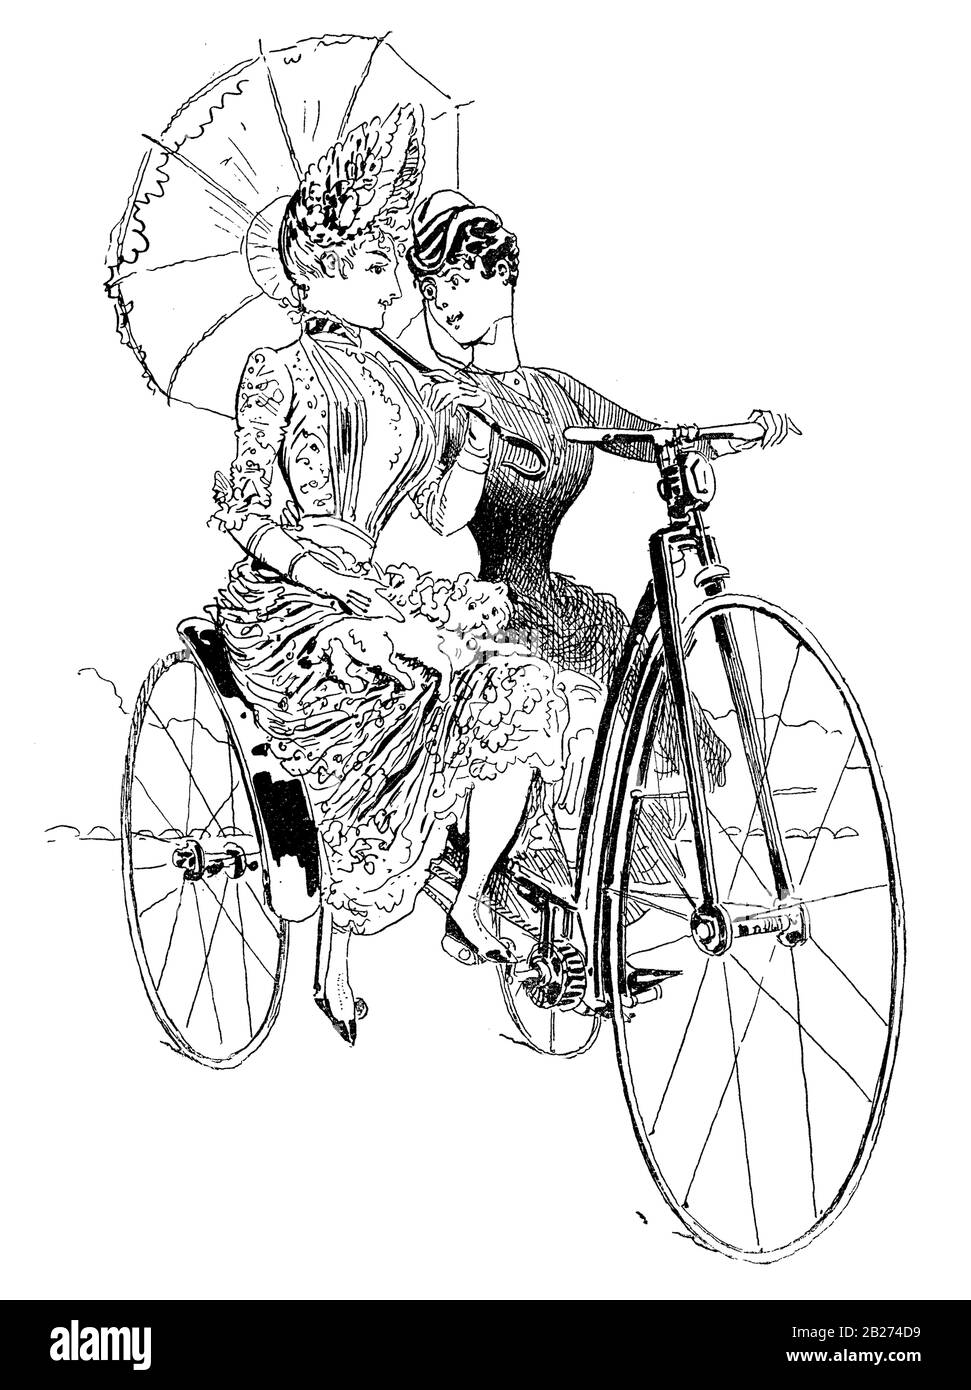 Humour et caricature français, filles avec parasol dans un tricycle à roues hautes Banque D'Images